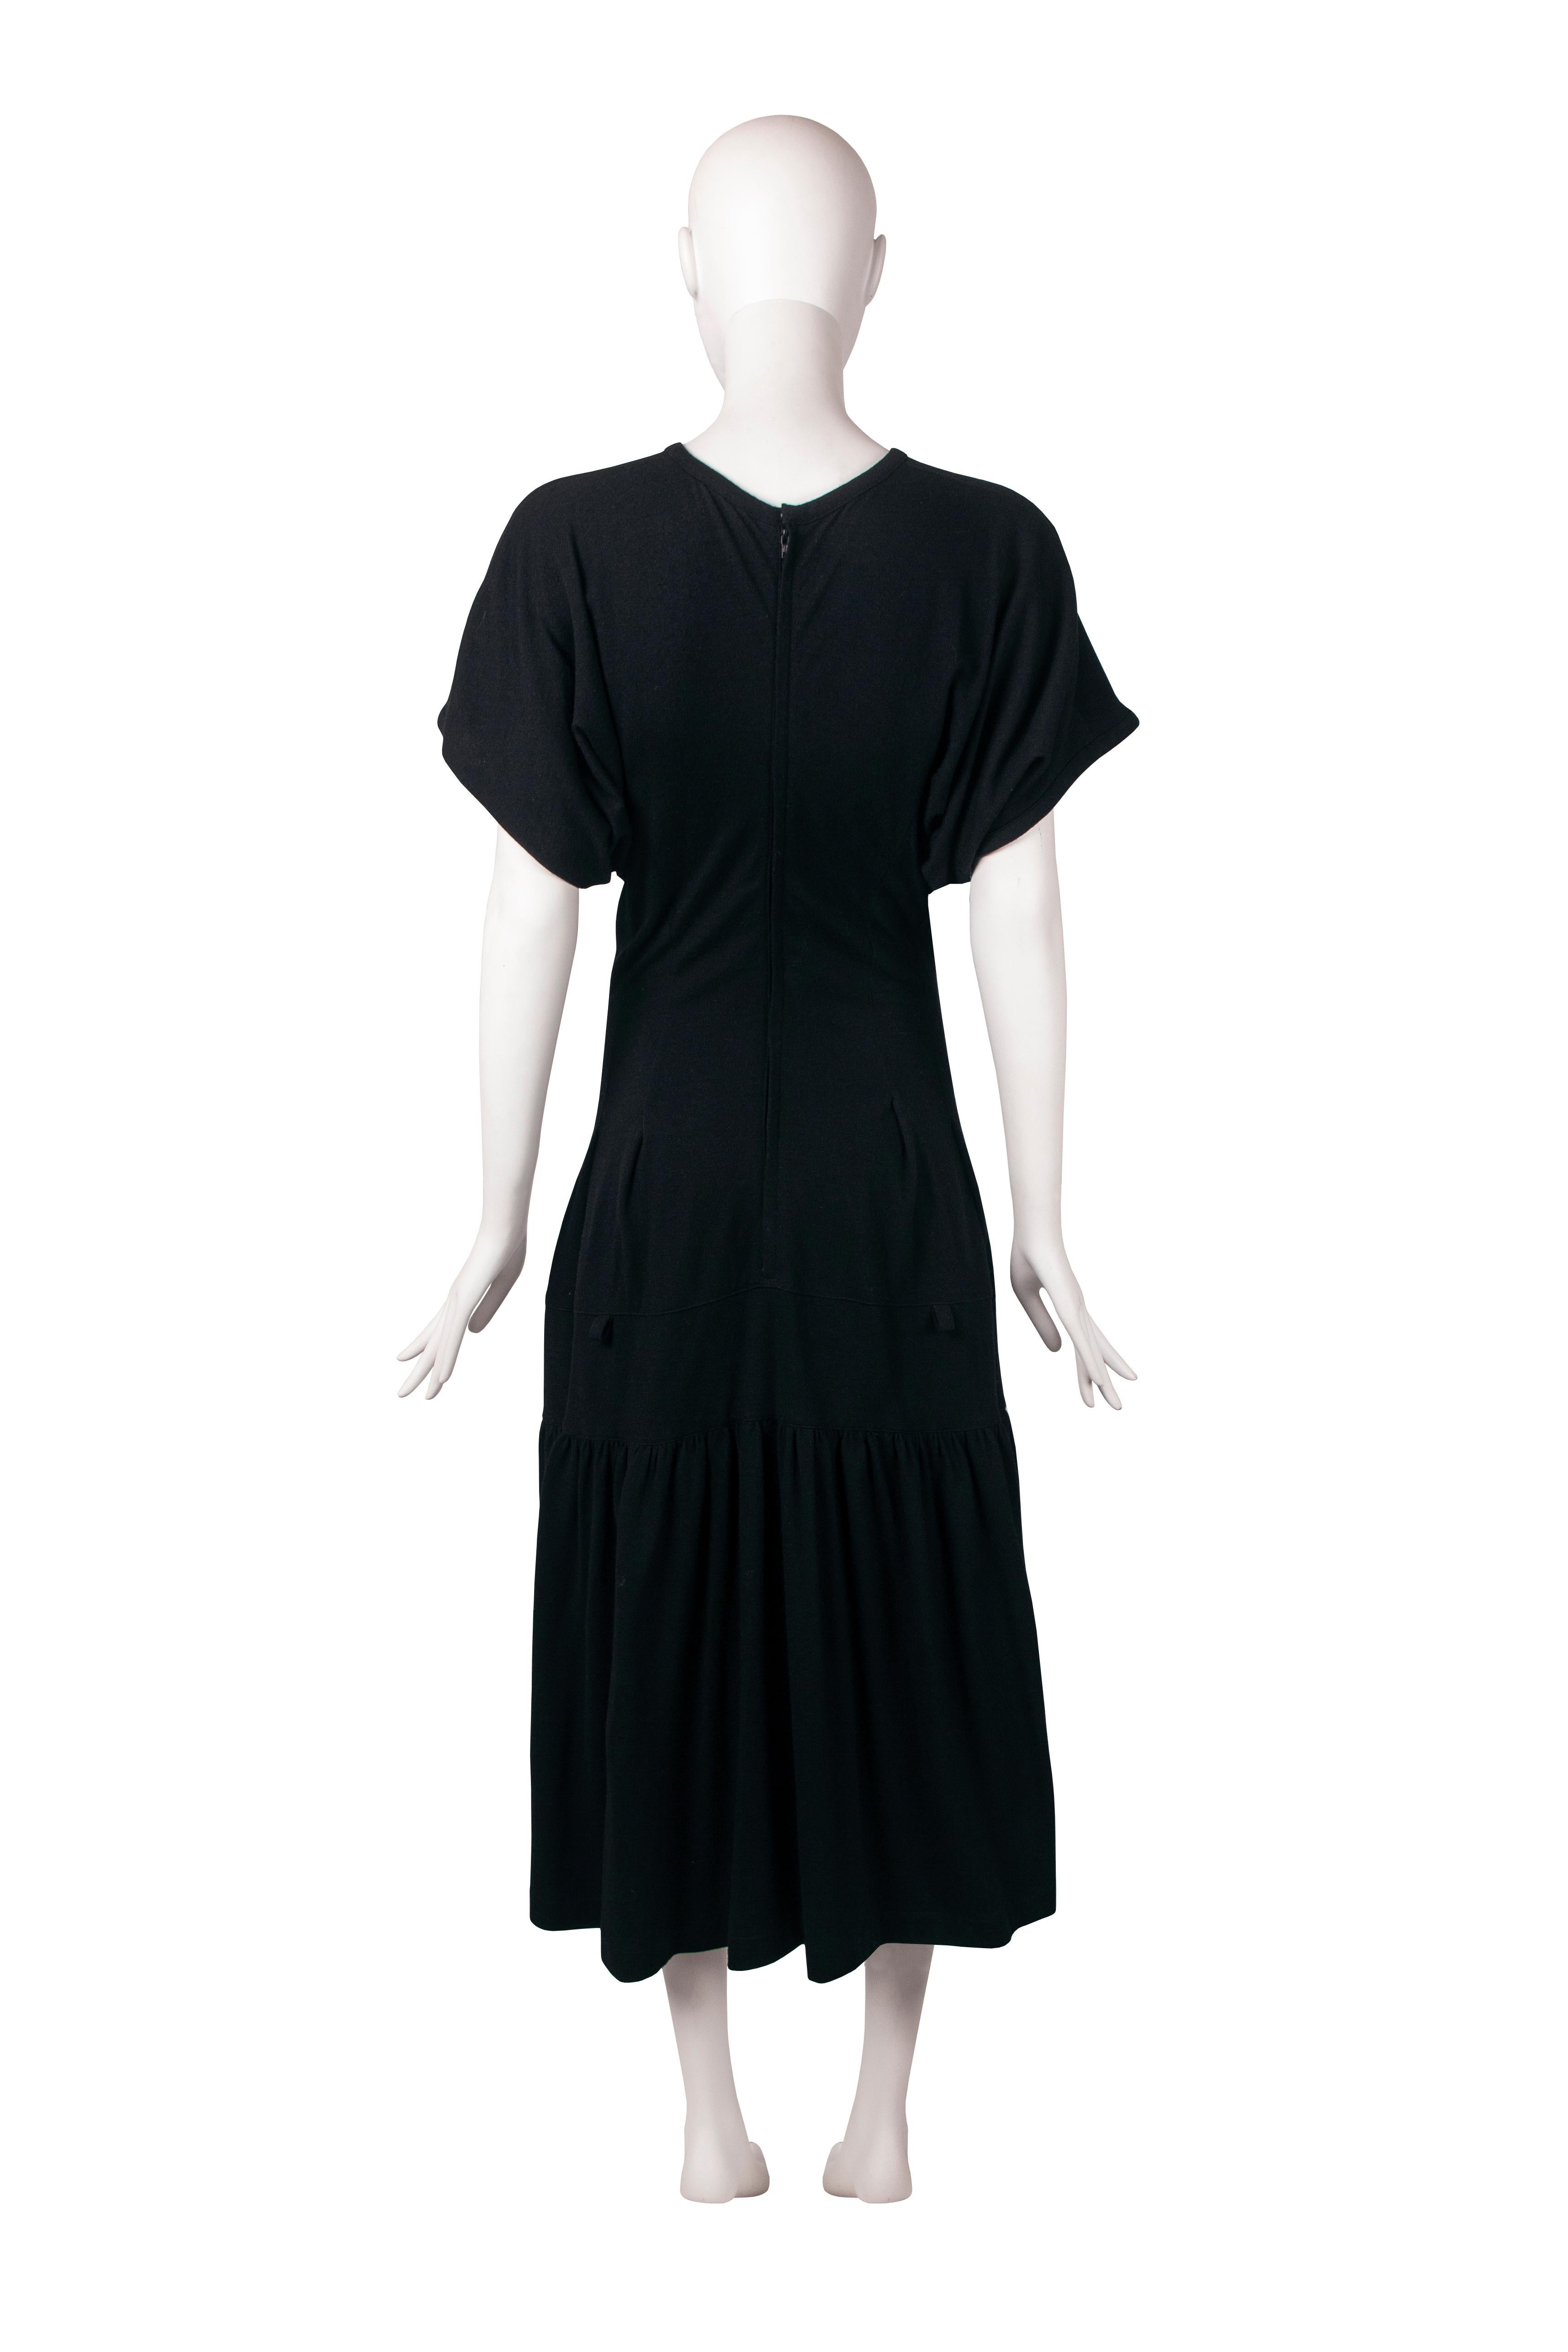 Comme Des Garcons black wool dress, fw 1989 1